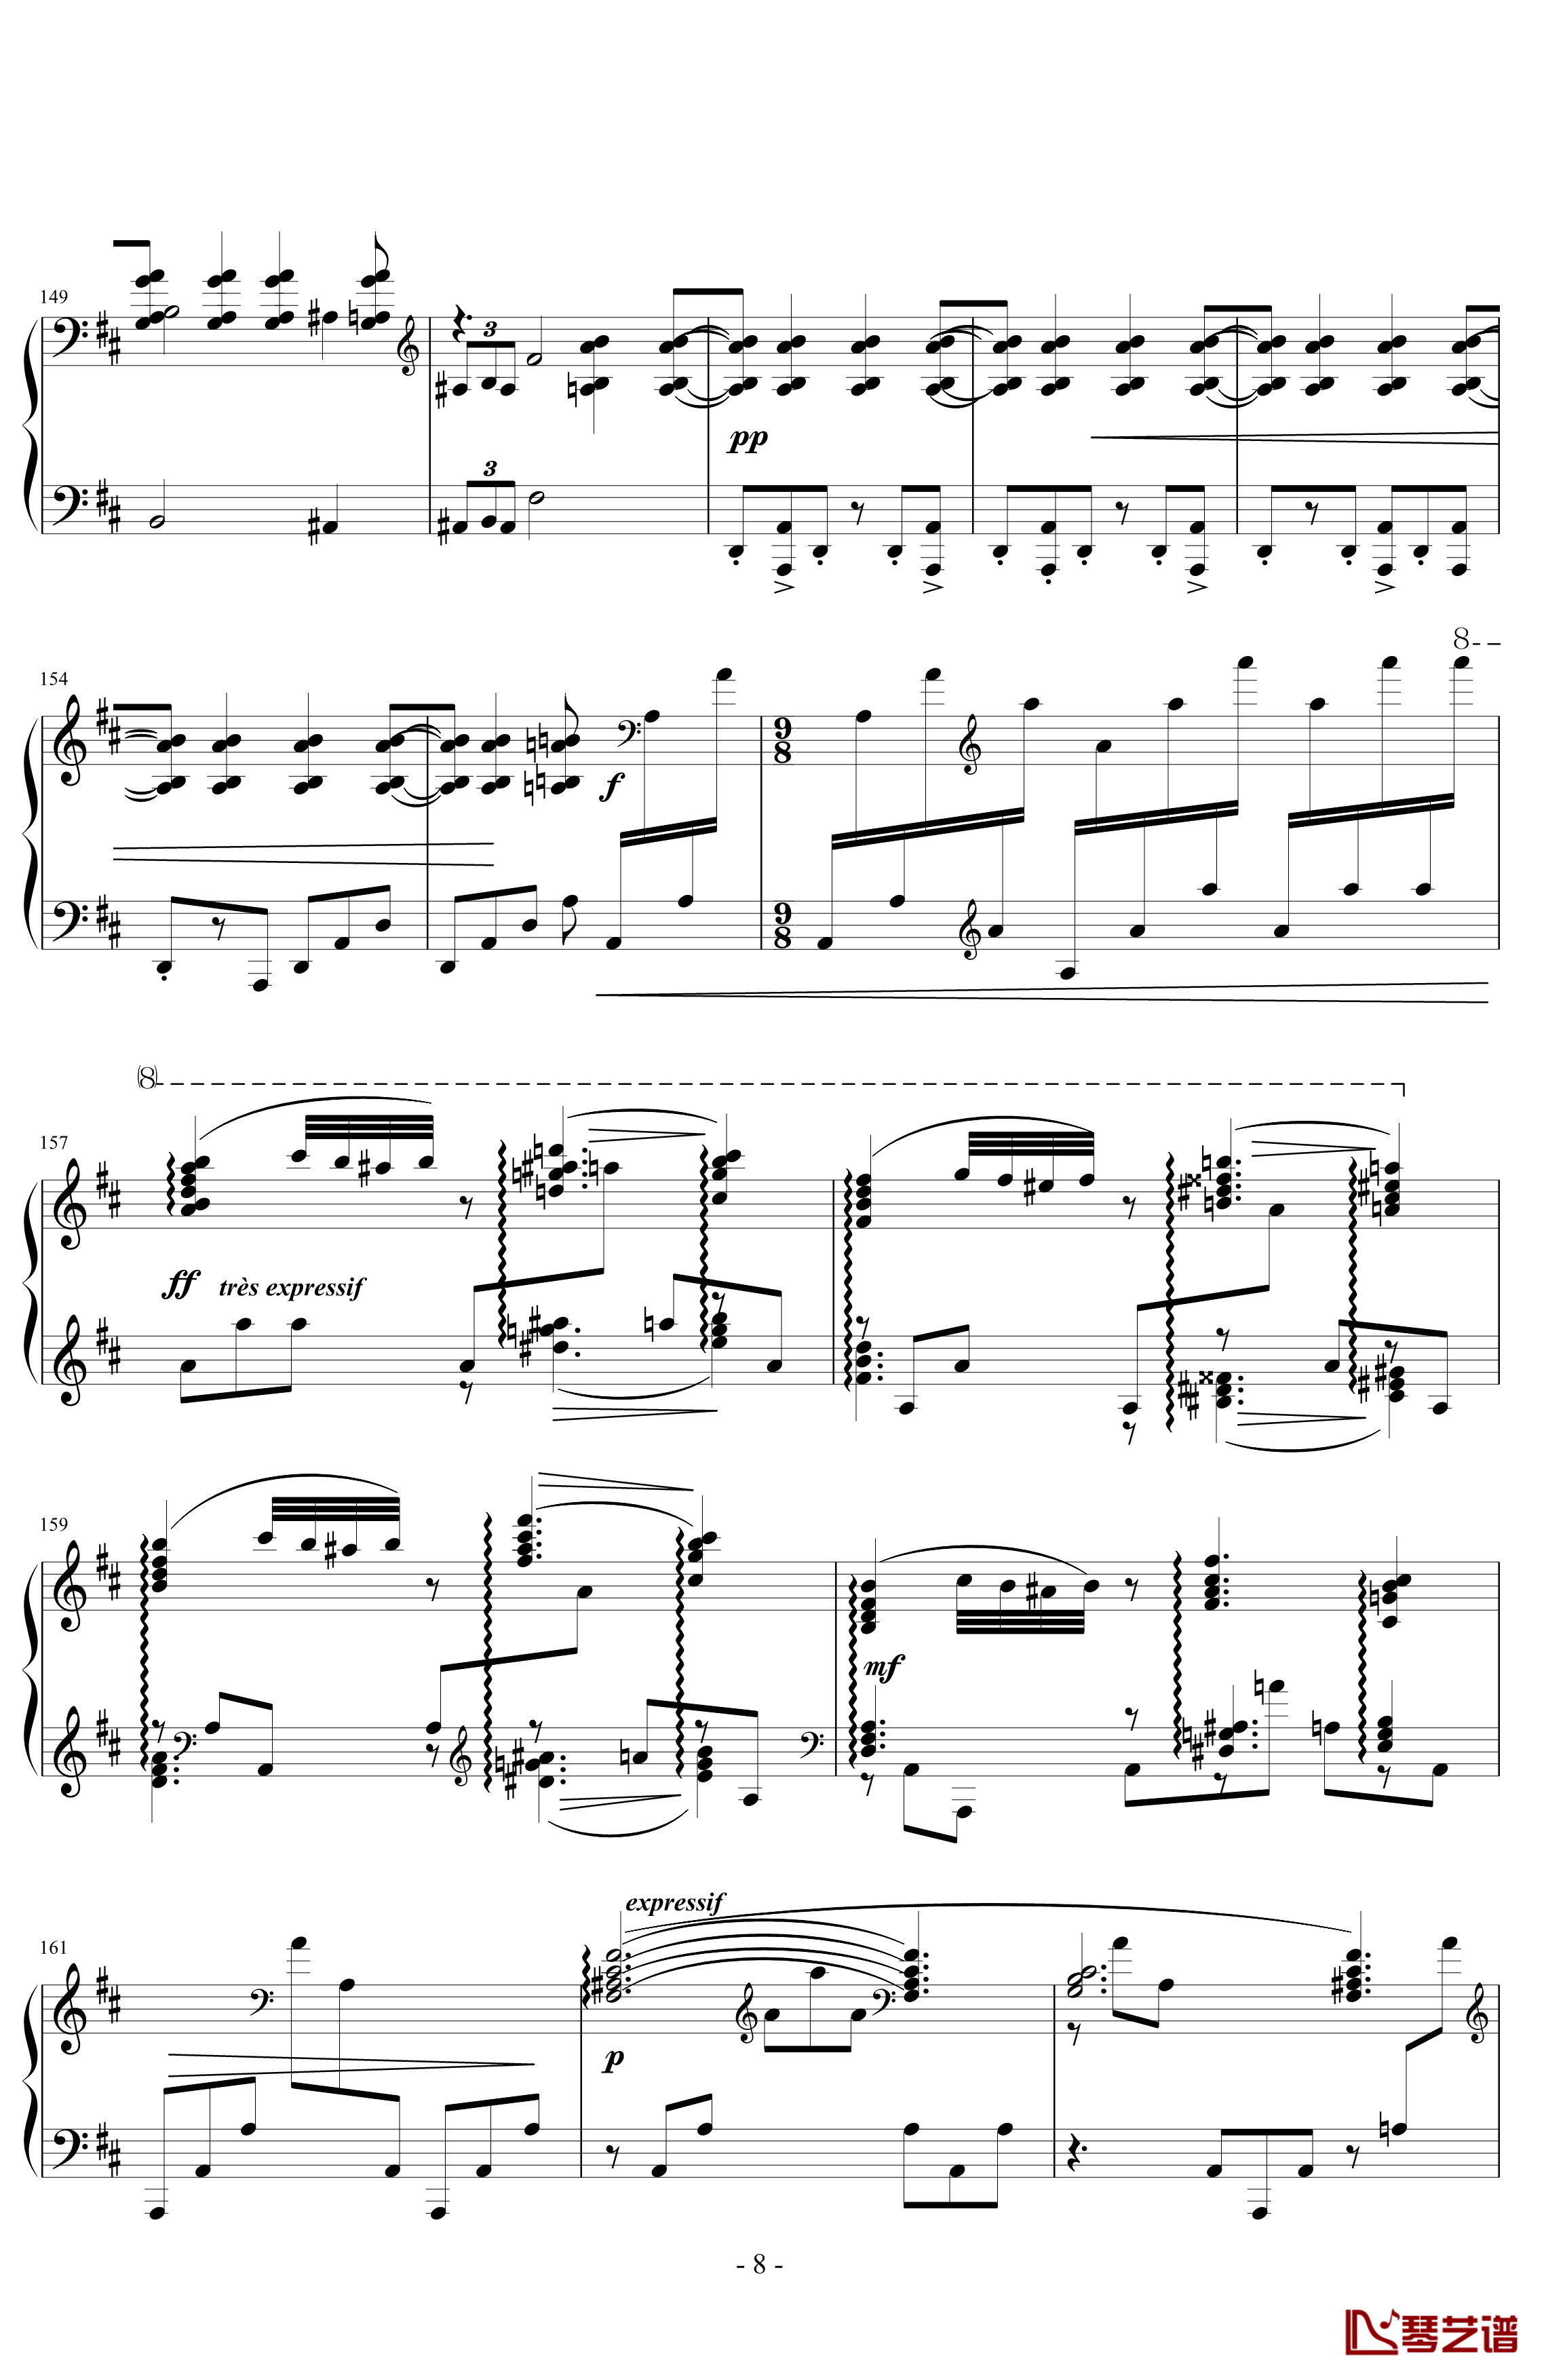 丑角的晨歌钢琴谱-组曲第4首-拉威尔-Ravel8